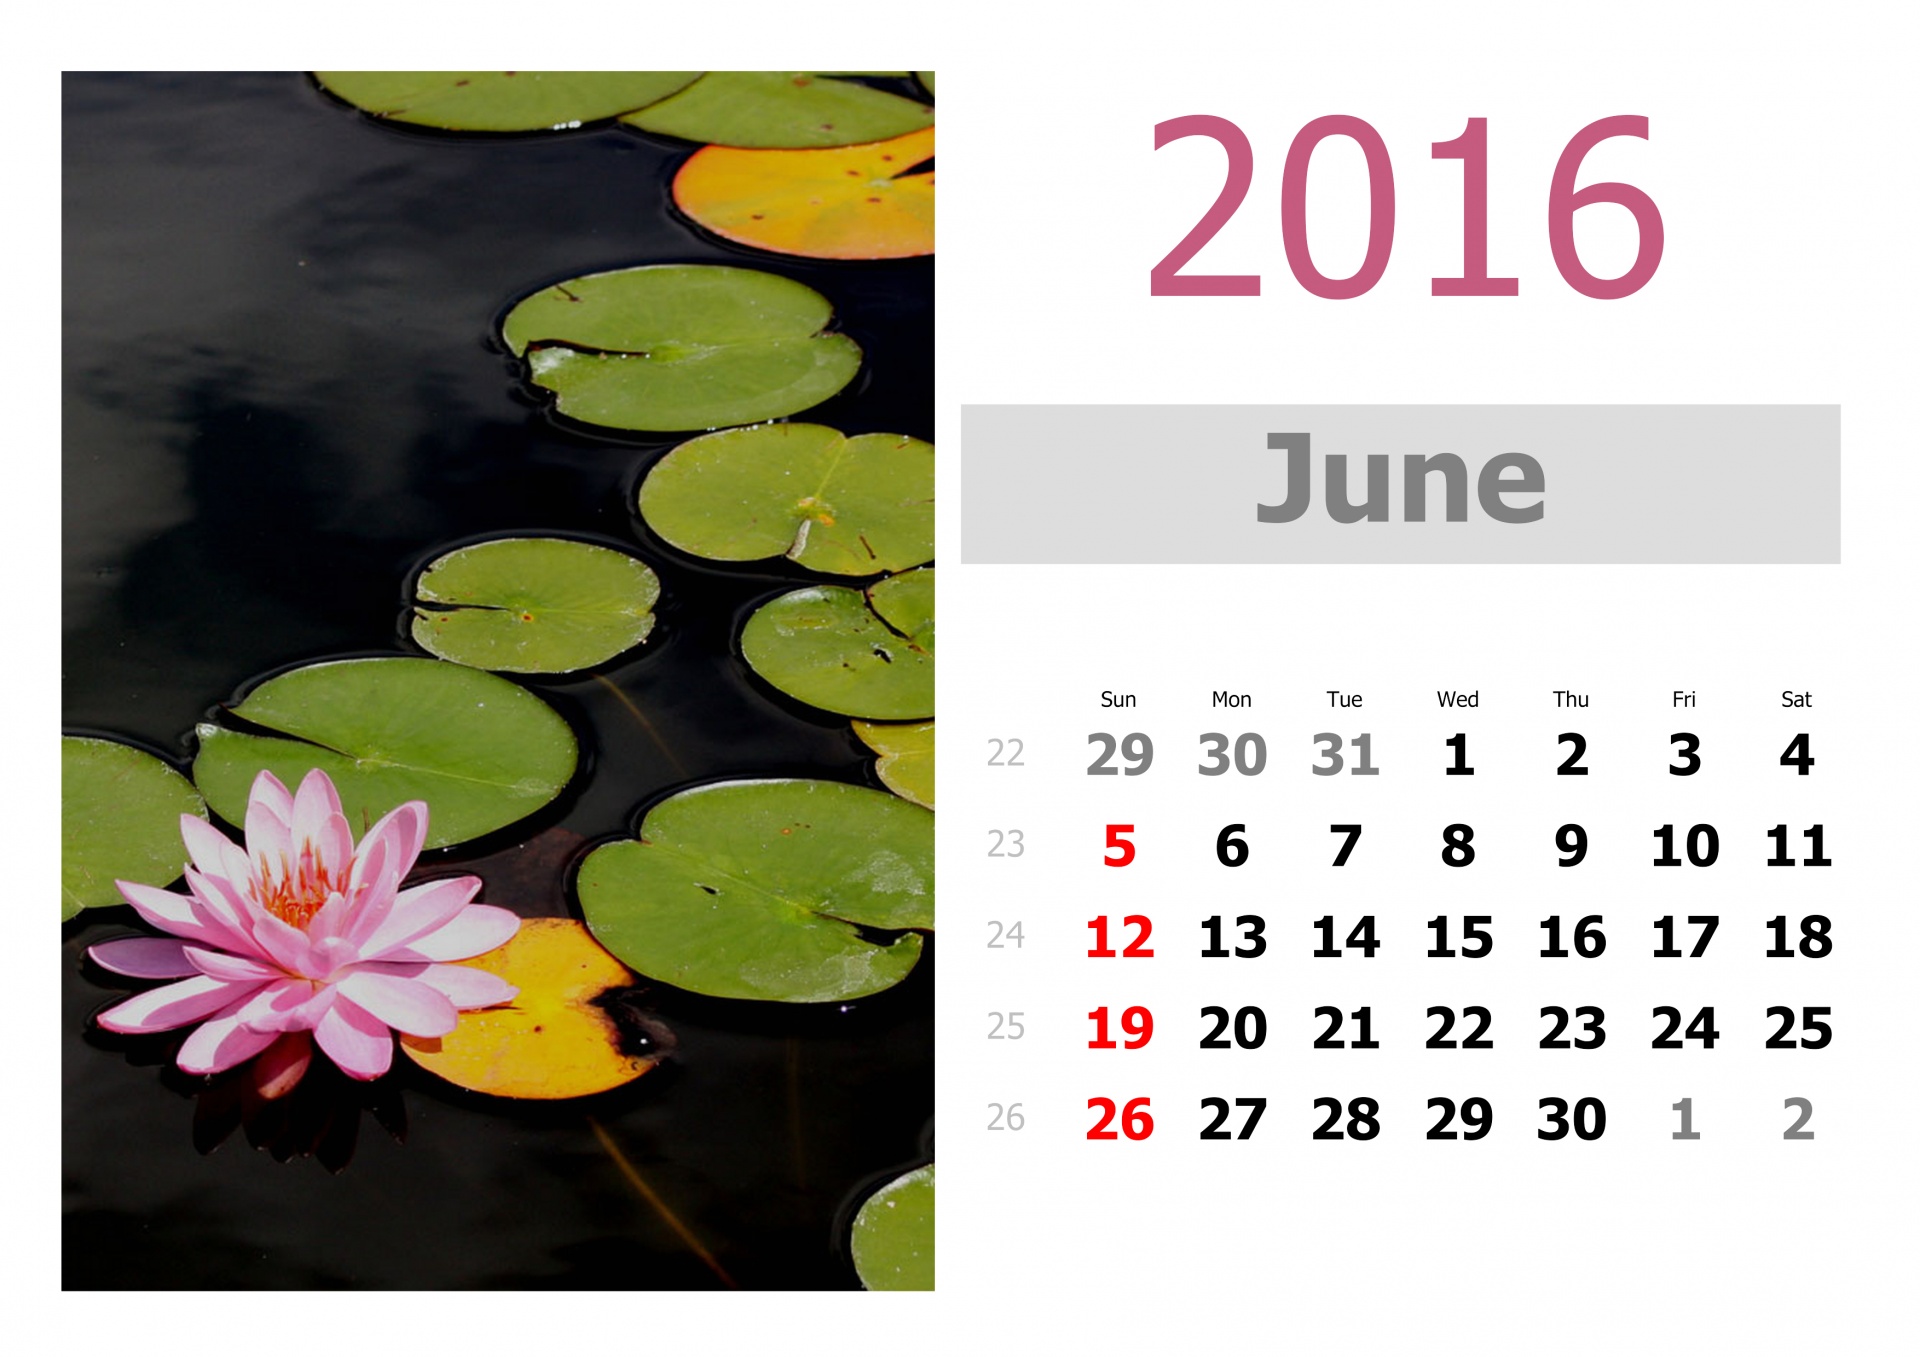 2016 calendar may free photo